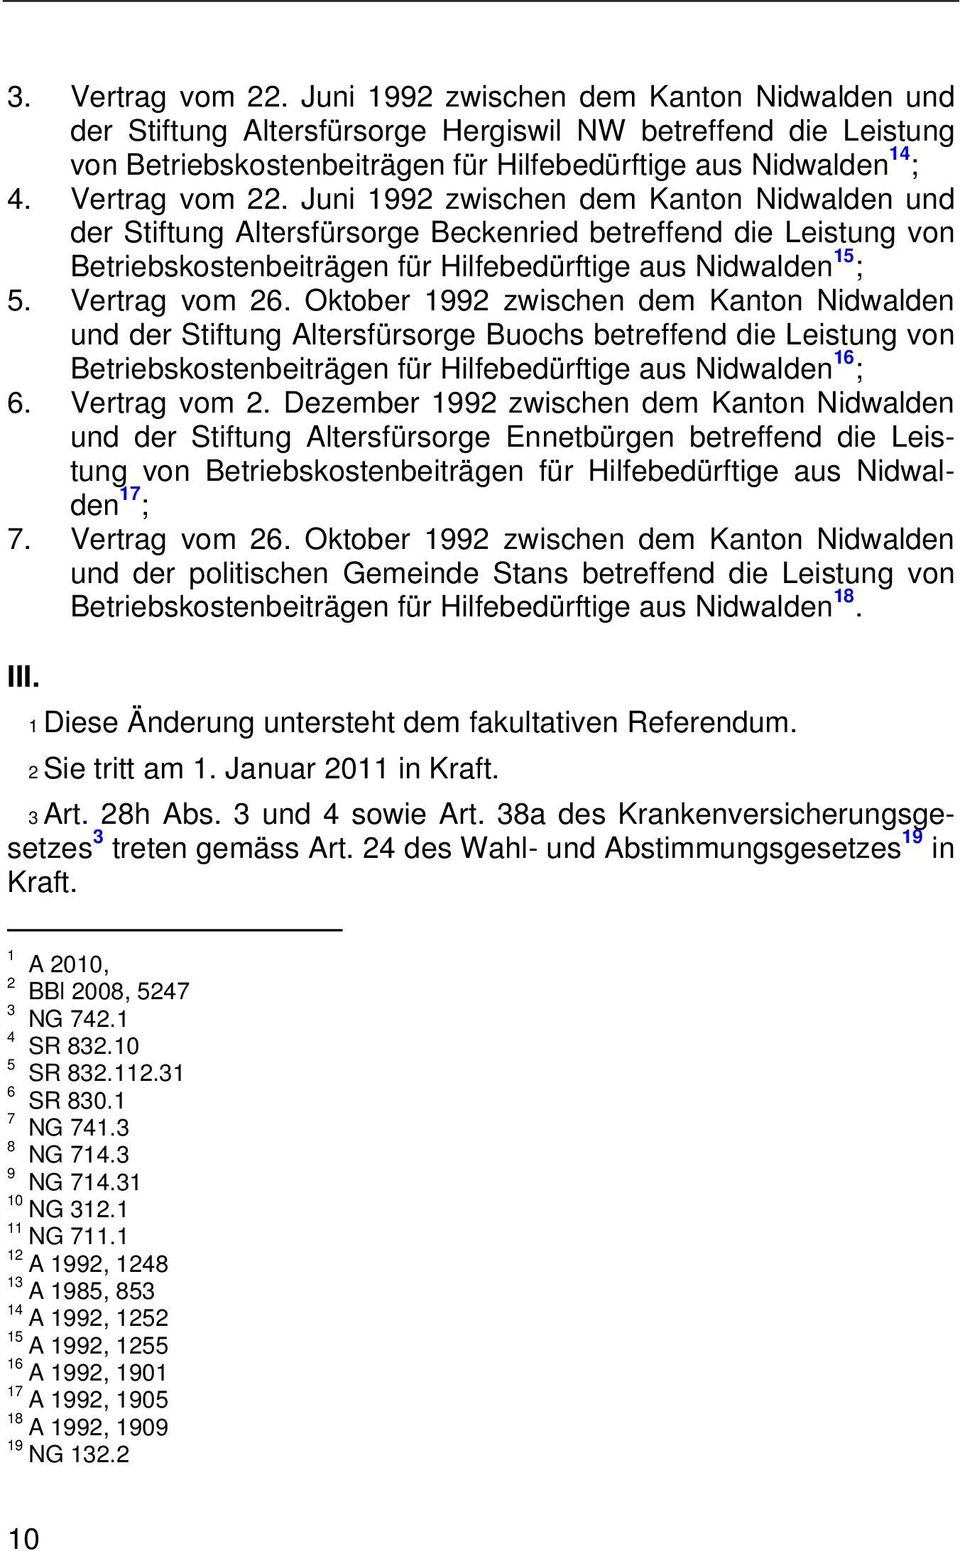 Vertrag vom 26. Oktober 1992 zwischen dem Kanton Nidwalden und der Stiftung Altersfürsorge Buochs betreffend die Leistung von Betriebskostenbeiträgen für Hilfebedürftige aus Nidwalden 16 ; 6.